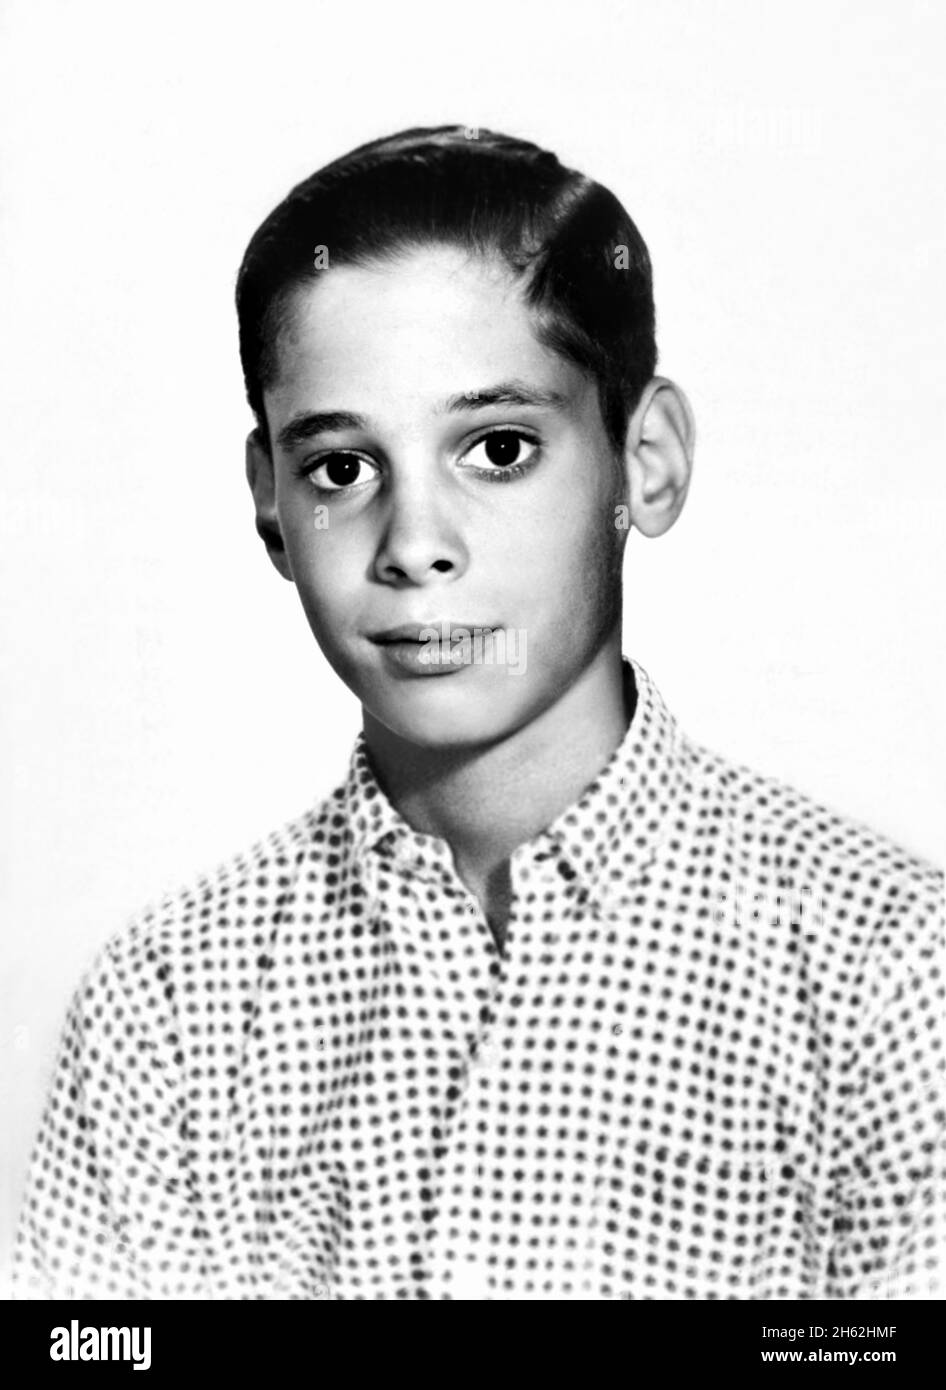 1958 ca , USA : The celebrated american Camp movie director JOHN WATERS ( born 22 april 1946 ) when was a young boy aged 12 . Unknown photographer .- HISTORY - FOTO STORICHE - REGISTA CINEMATOGRAFICO - MOVIE - CINEMA - PORTRAIT - RITRATTO - personalità da bambino bambini da giovani giovane - personality personalities when was young - INFANZIA - CHILD - CHILDREN - CHILDHOOD - TEENAGER - RAGAZZO - GAY - LGBT - CAMP  --- ARCHIVIO GBB Stock Photo